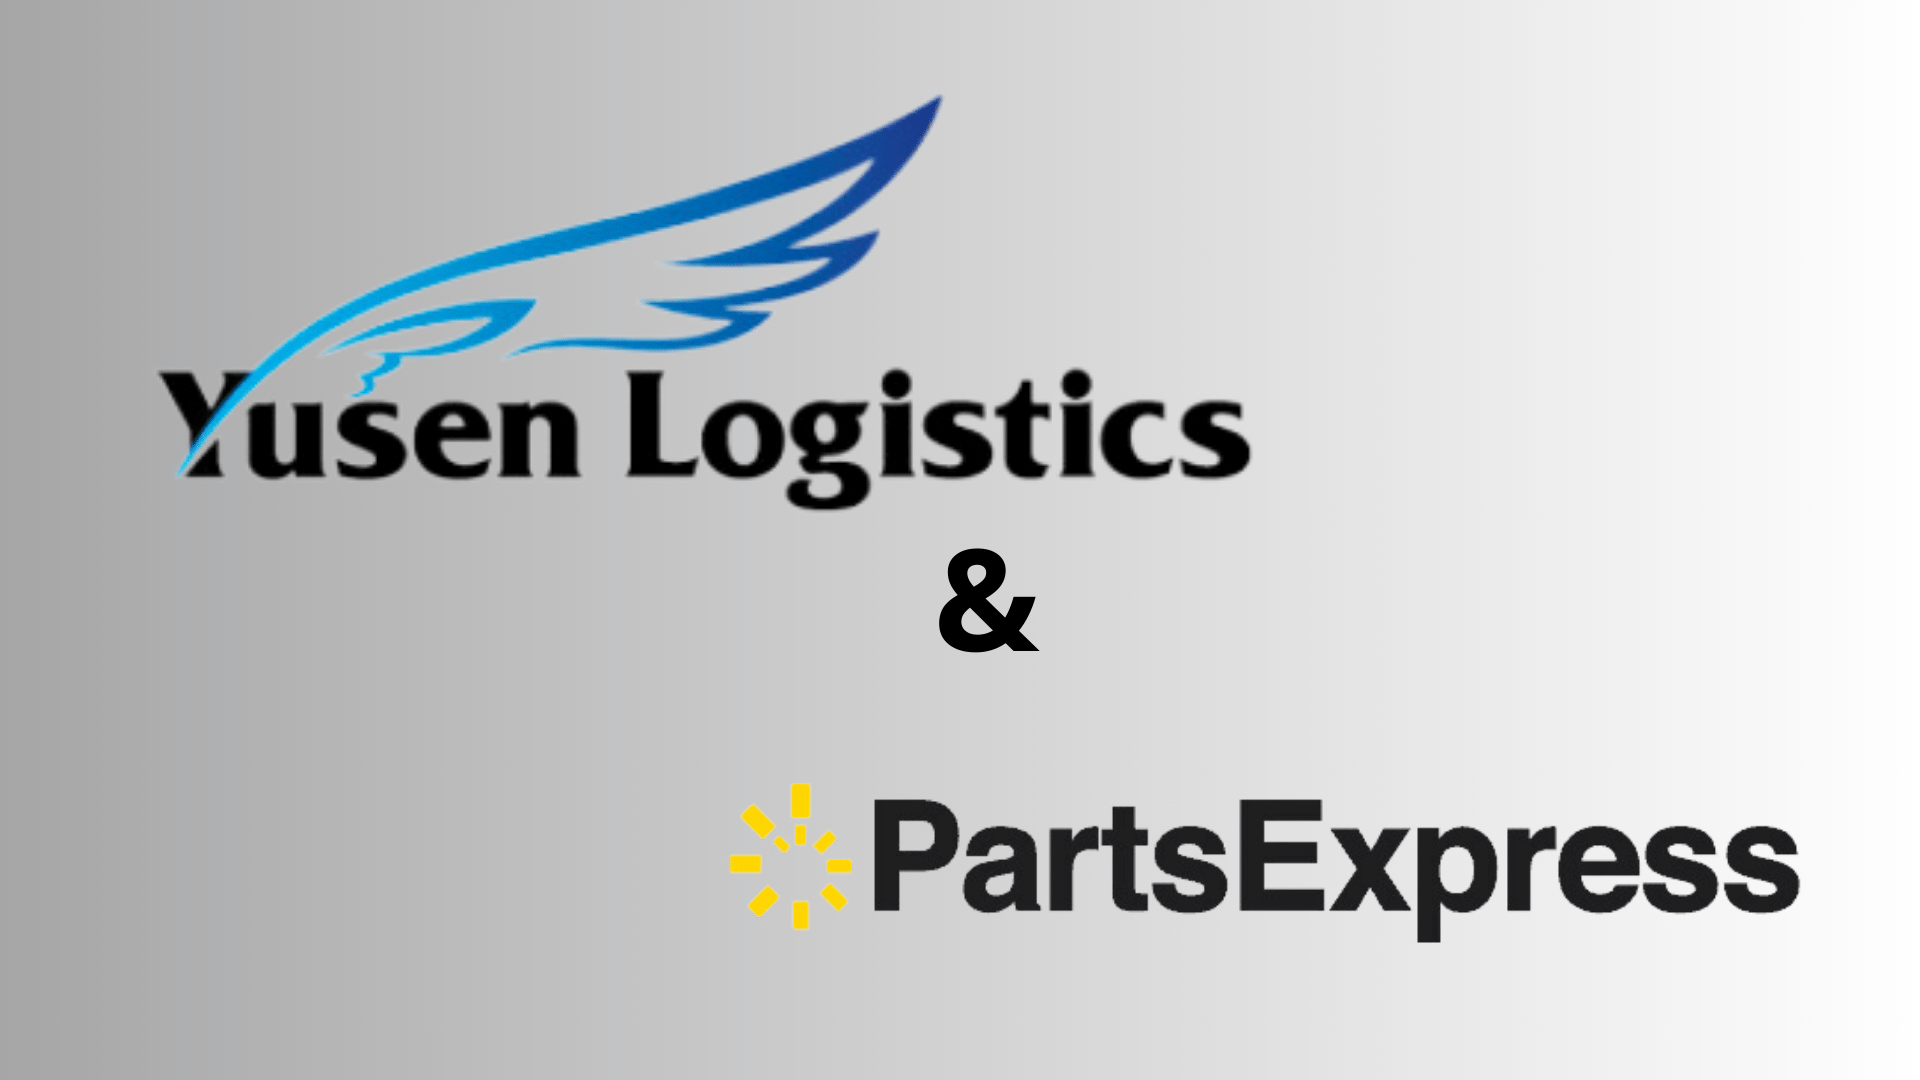 Yusen Logistics (Benelux) B.V. heeft de intentie om PartsExpress B.V. over te nemen